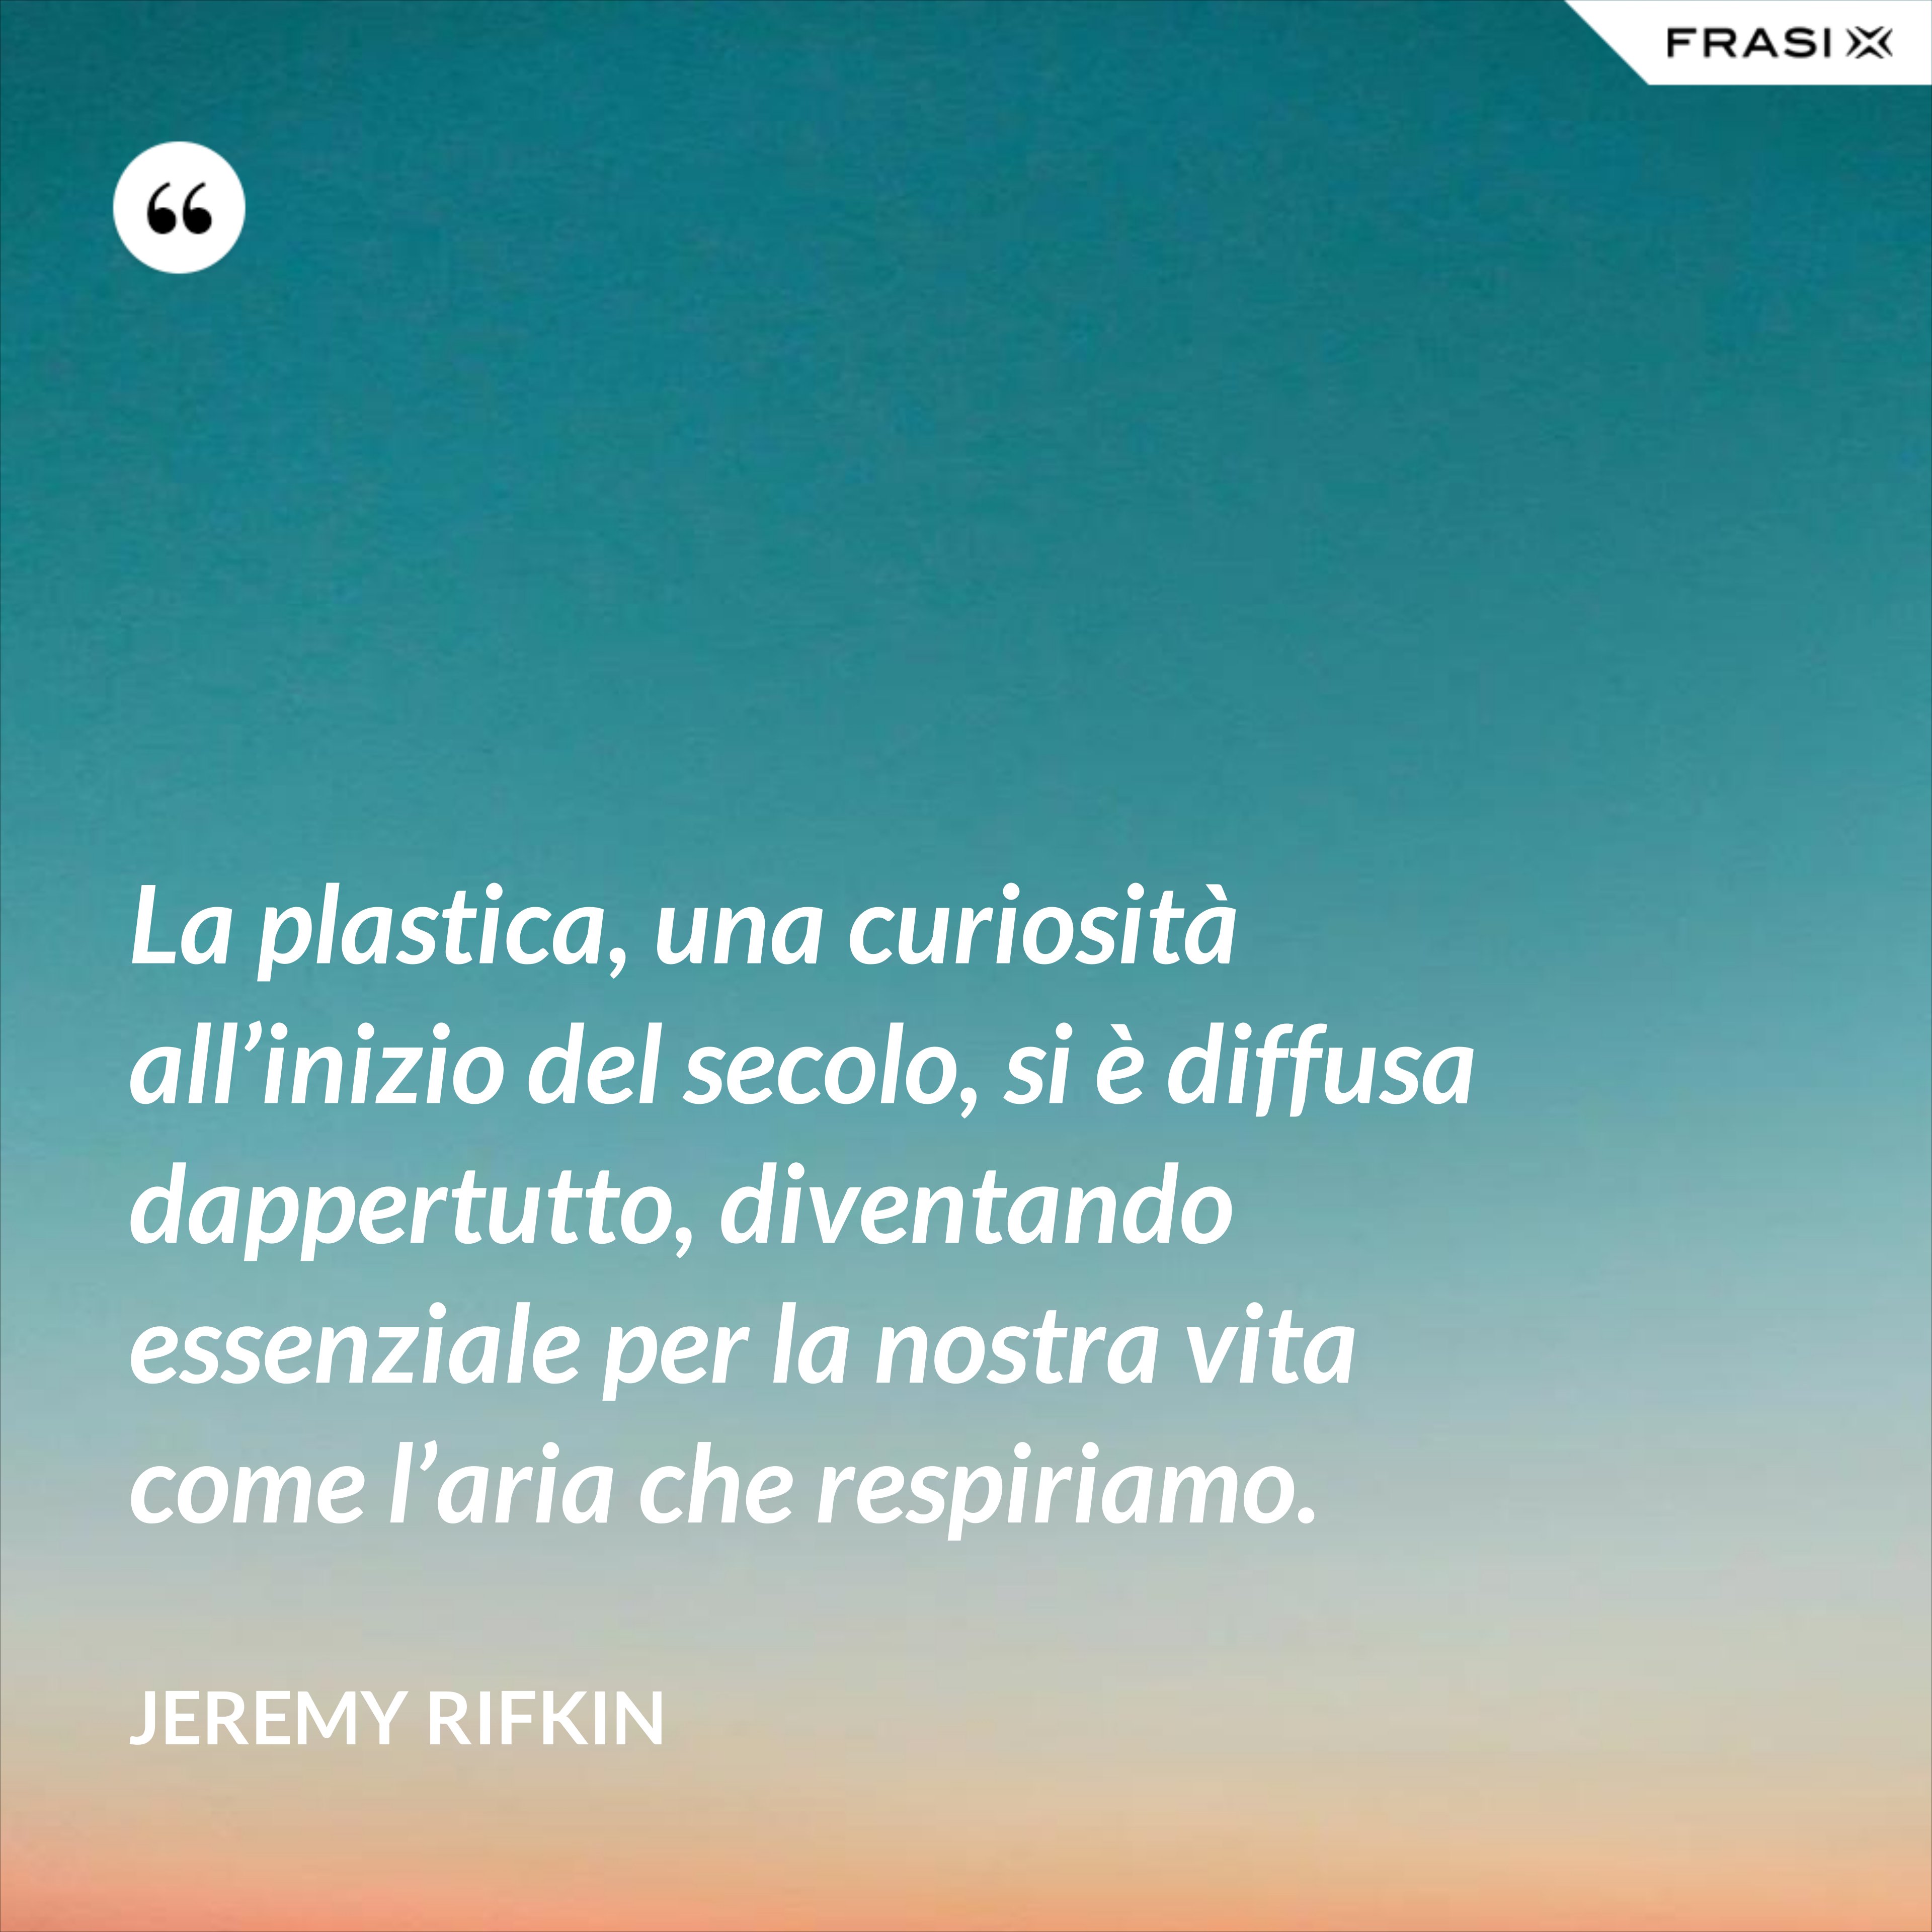 La plastica, una curiosità all’inizio del secolo, si è diffusa dappertutto, diventando essenziale per la nostra vita come l’aria che respiriamo. - Jeremy Rifkin